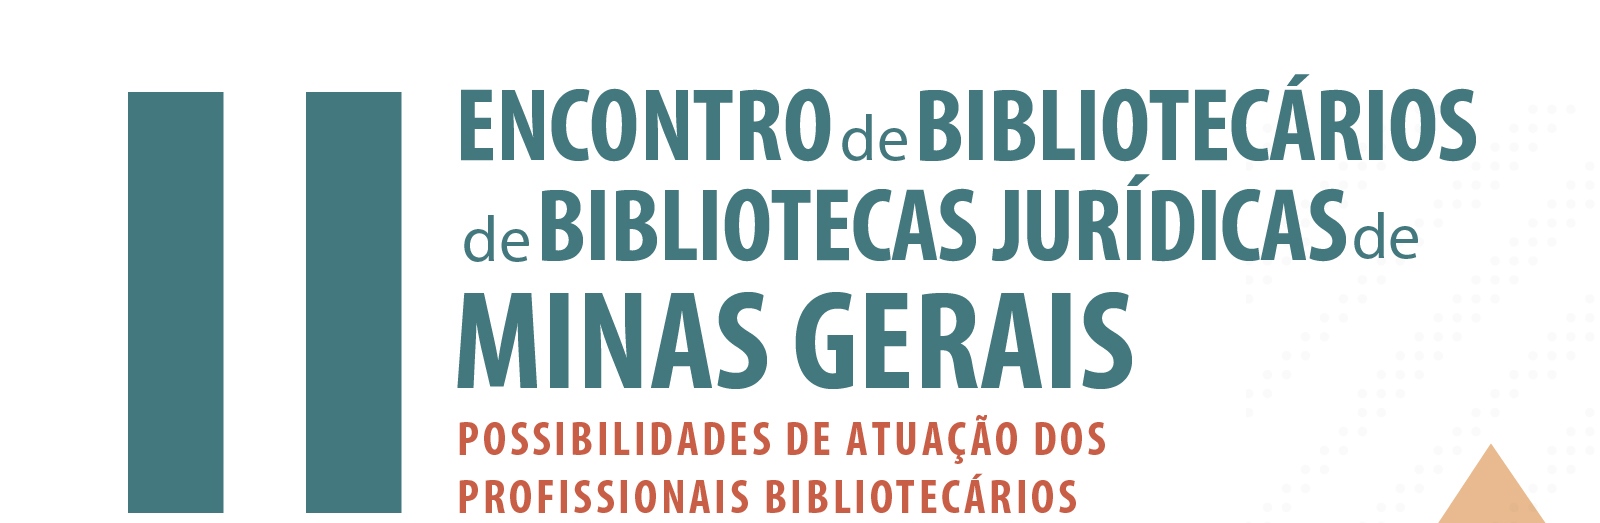 II Encontro de Bibliotecários de Bibliotecas Jurídicas do Estado de Minas Gerais: possibilidades de atuação dos profissionais bibliotecários